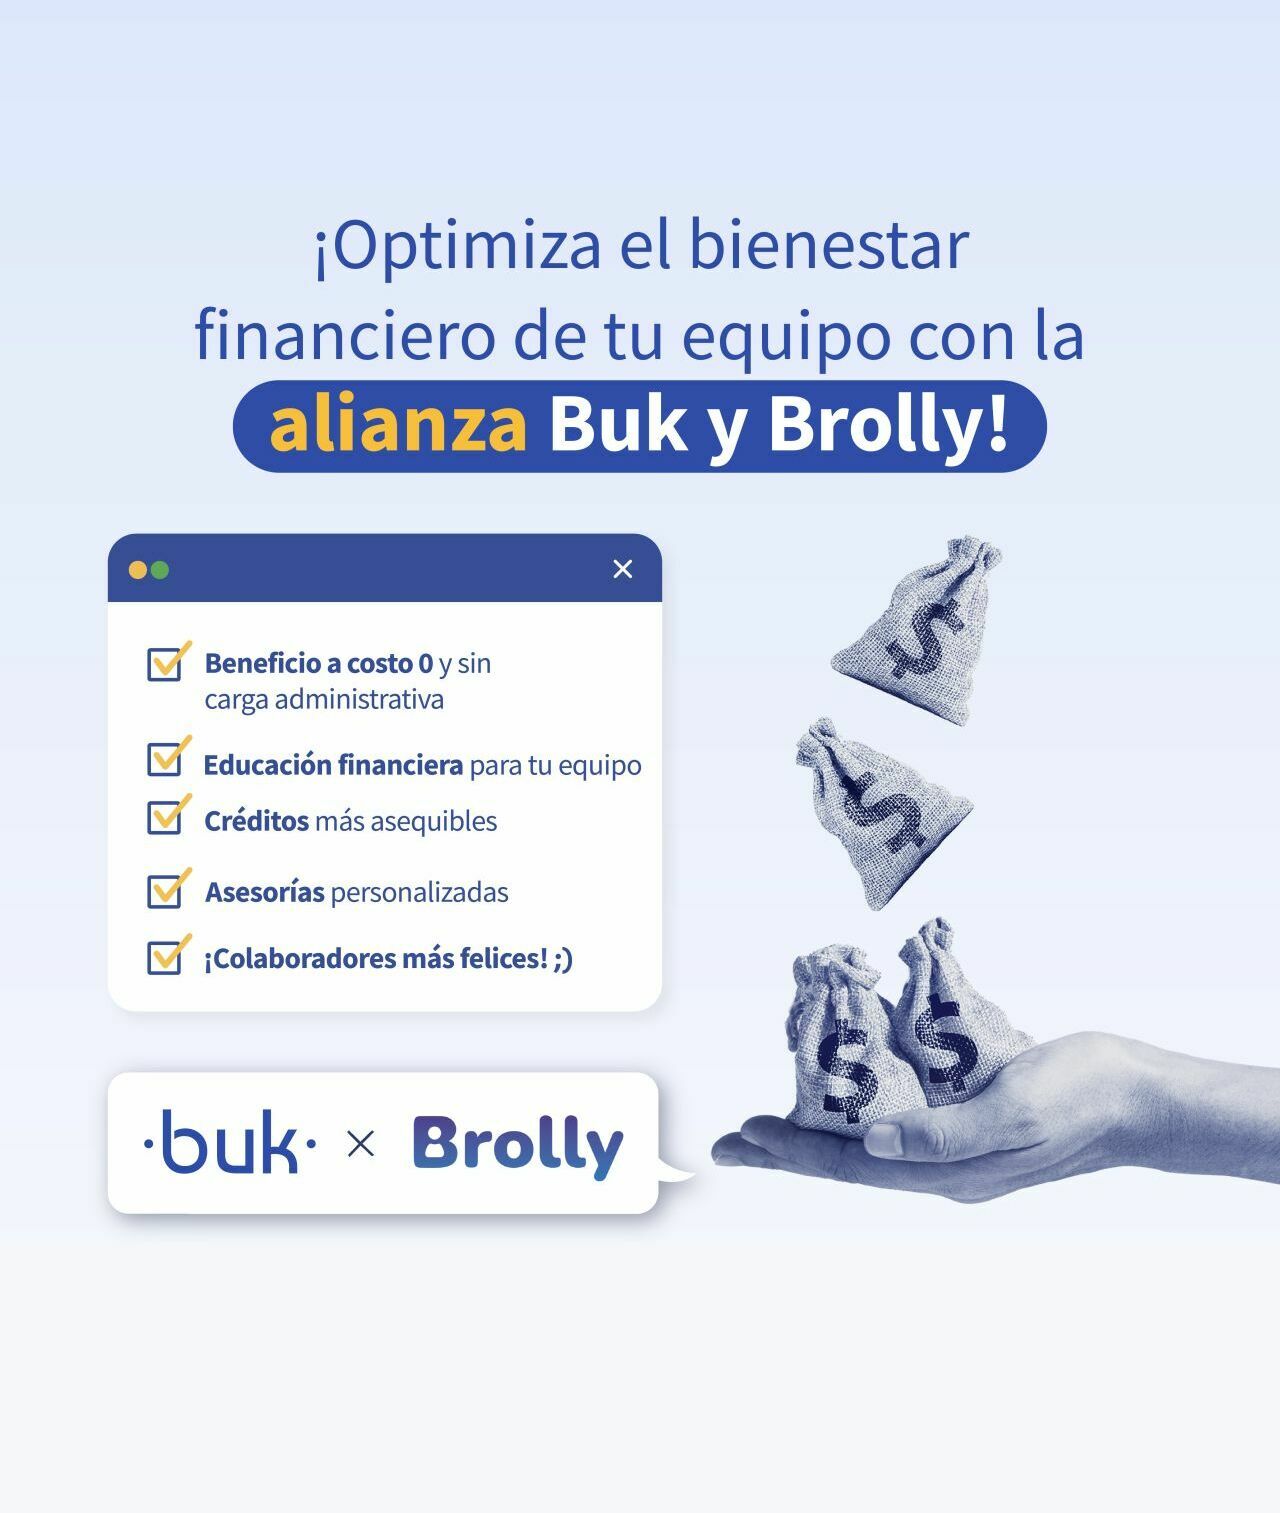 ¡Buk + Brolly: La alianza que te ayuda en tus finanzas! 💸✨